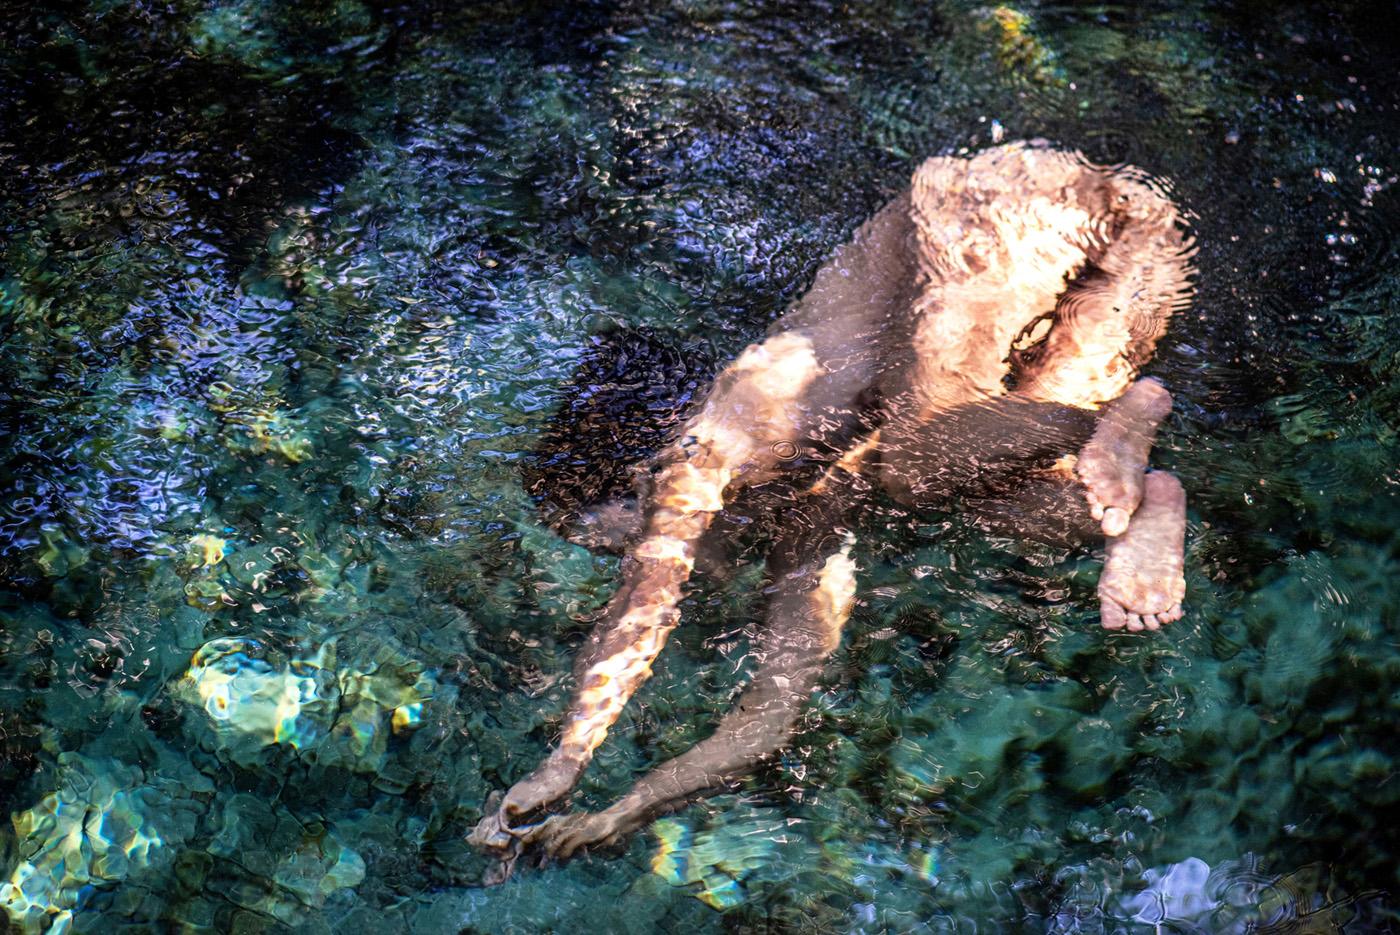 John Mazlish Nude Print – „Deep Dive“ – farbenfroher Akt in Wasserfotografie